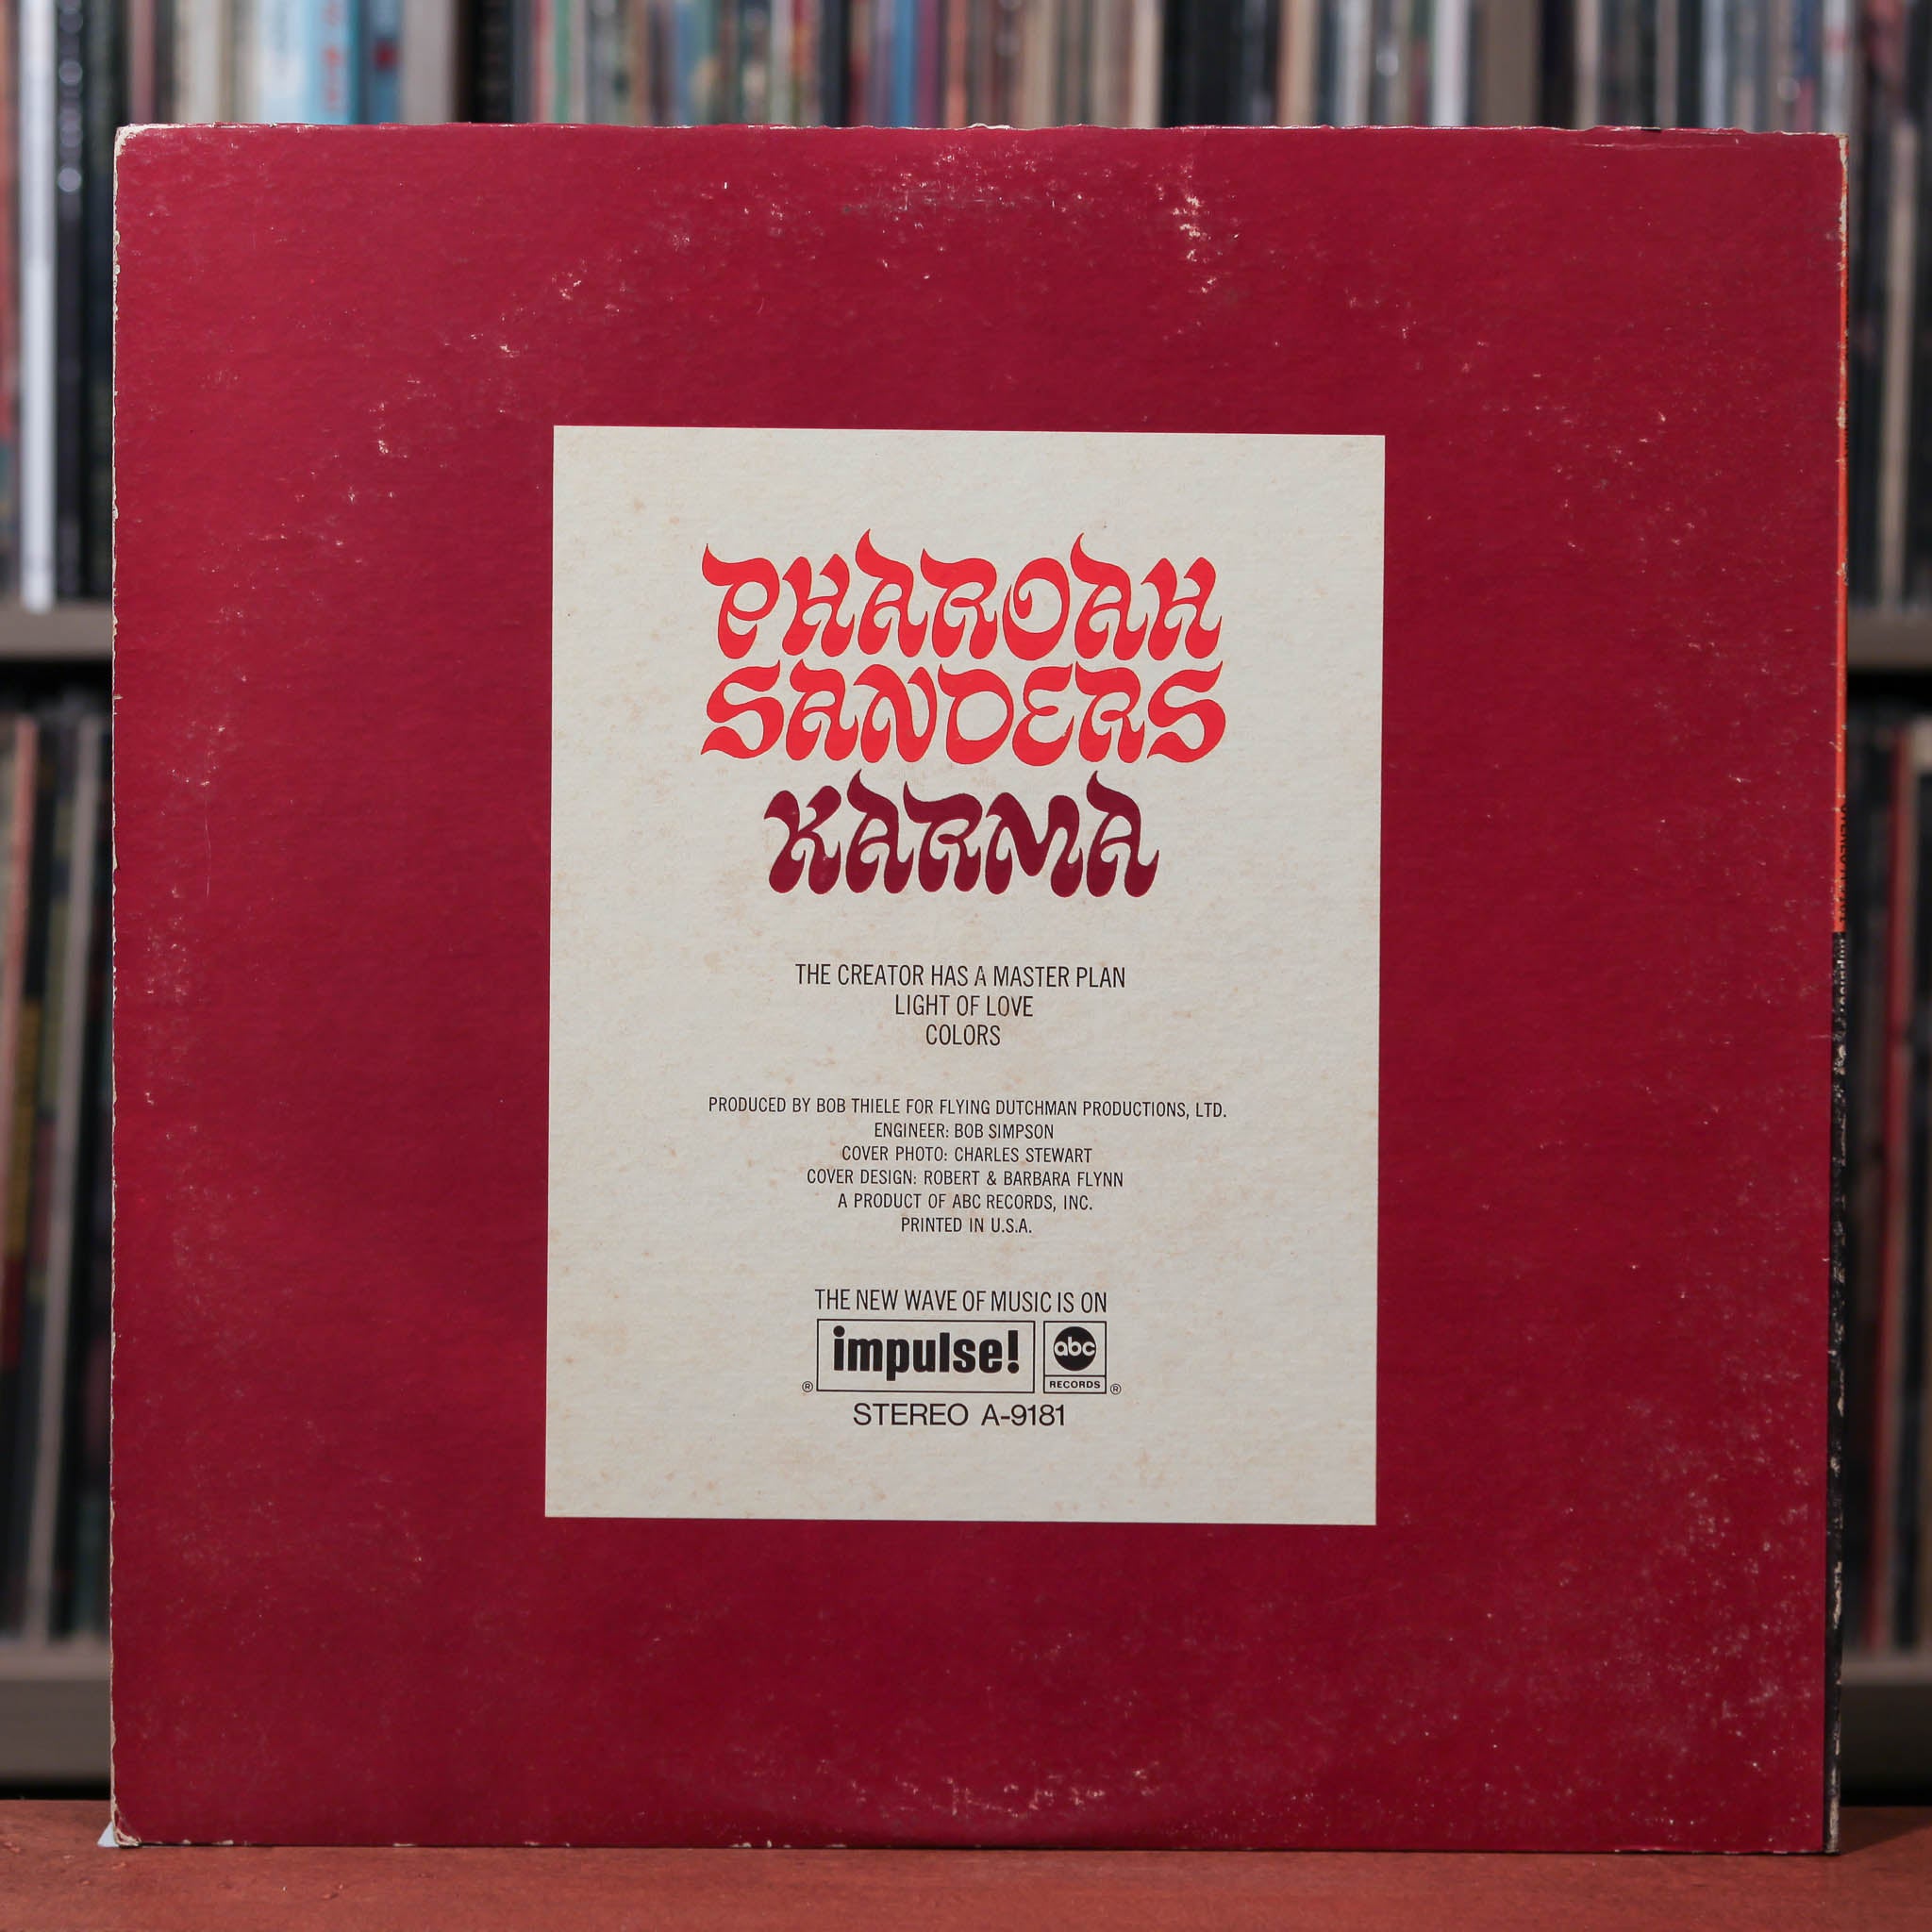 Pharoah Sanders - Karma - 1969 Impulse!, VG/VG+